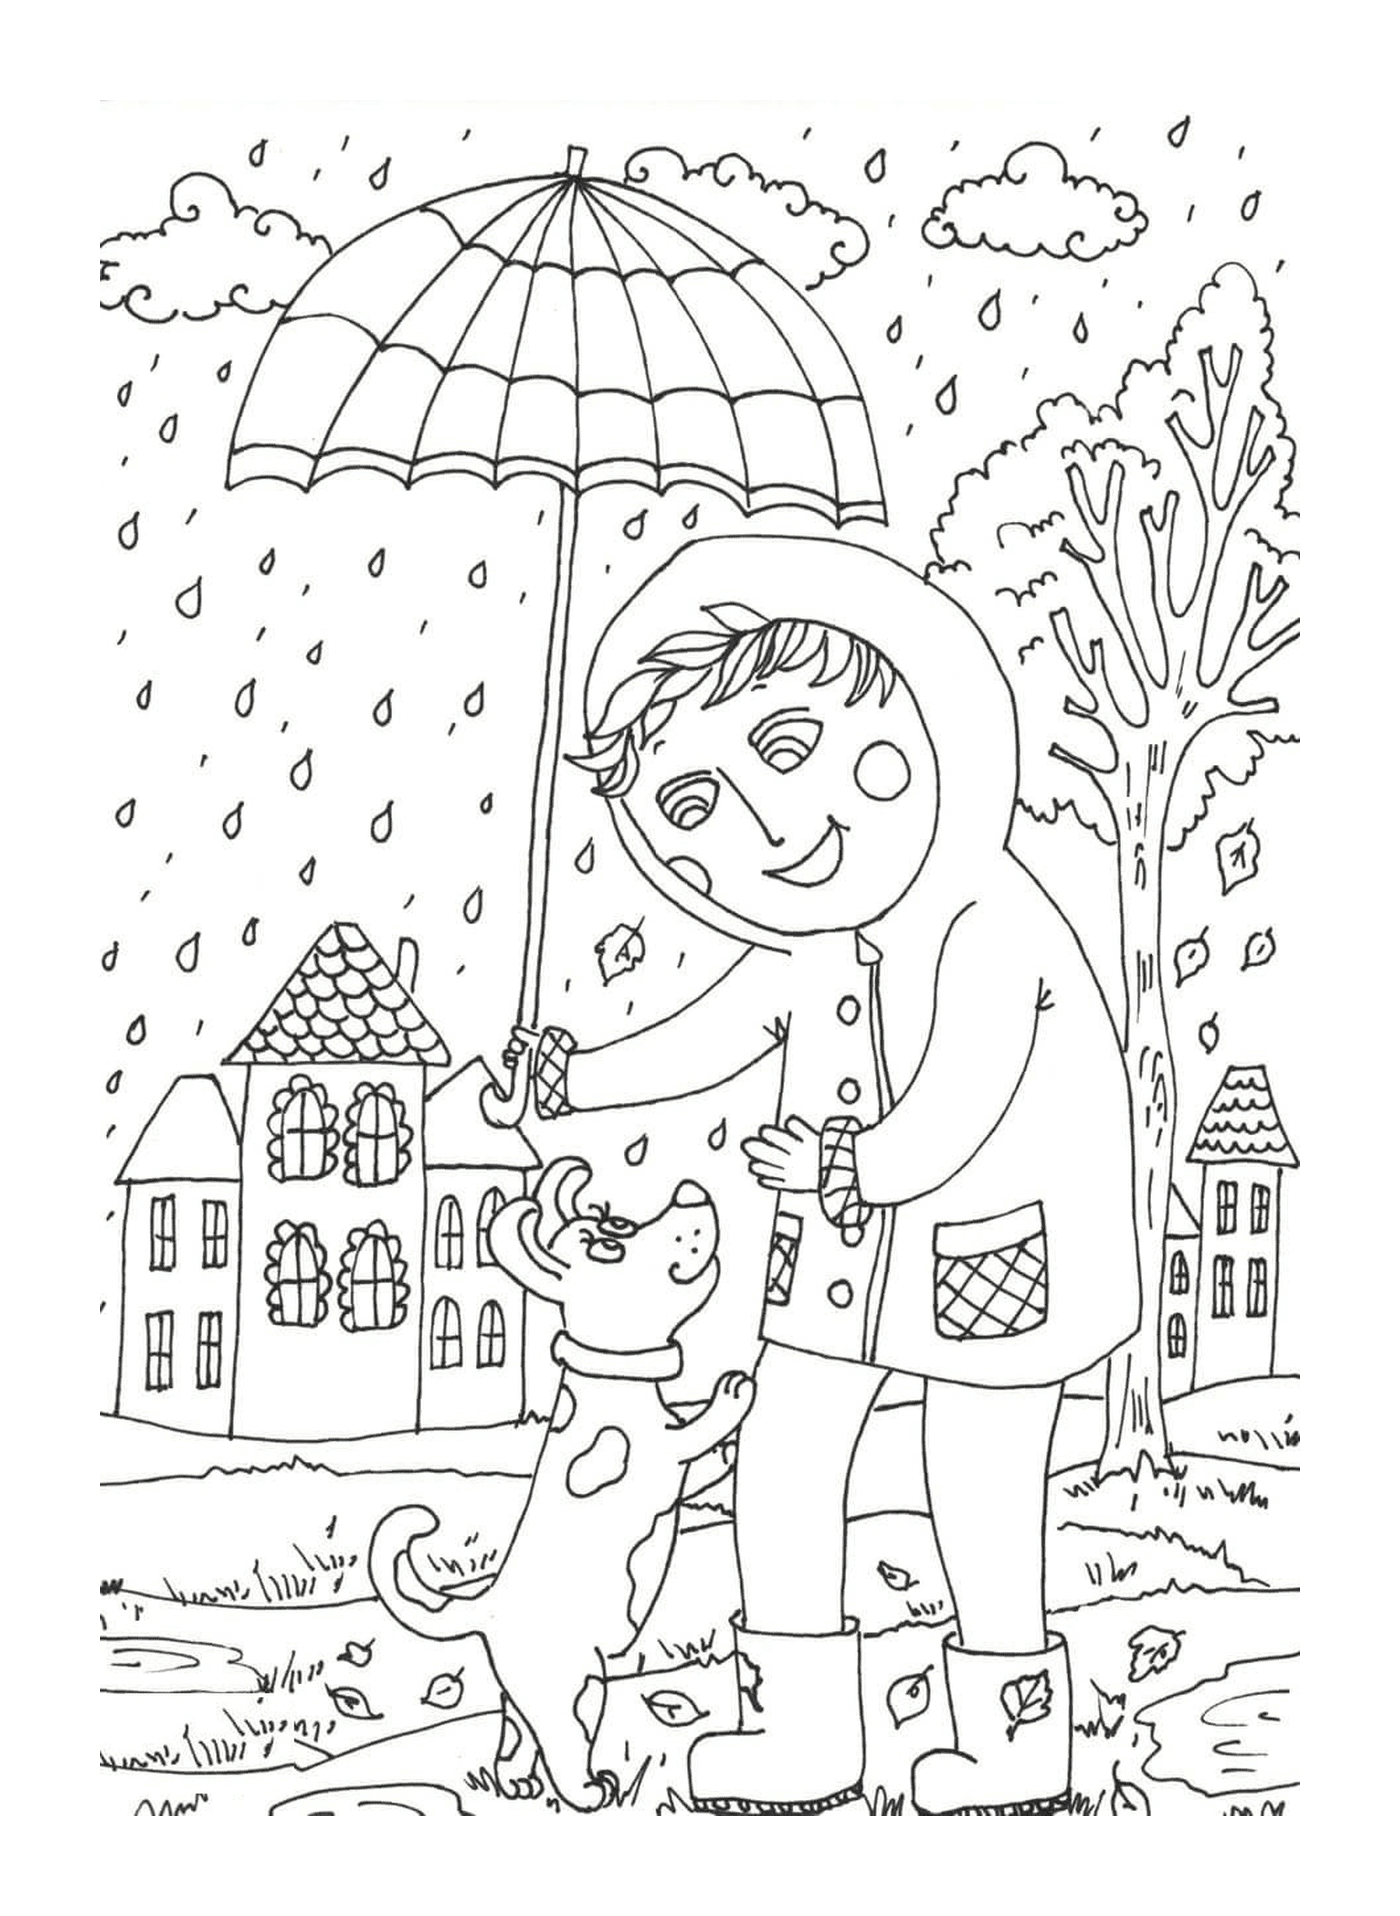  Ребенок, держащий зонтик над собакой 